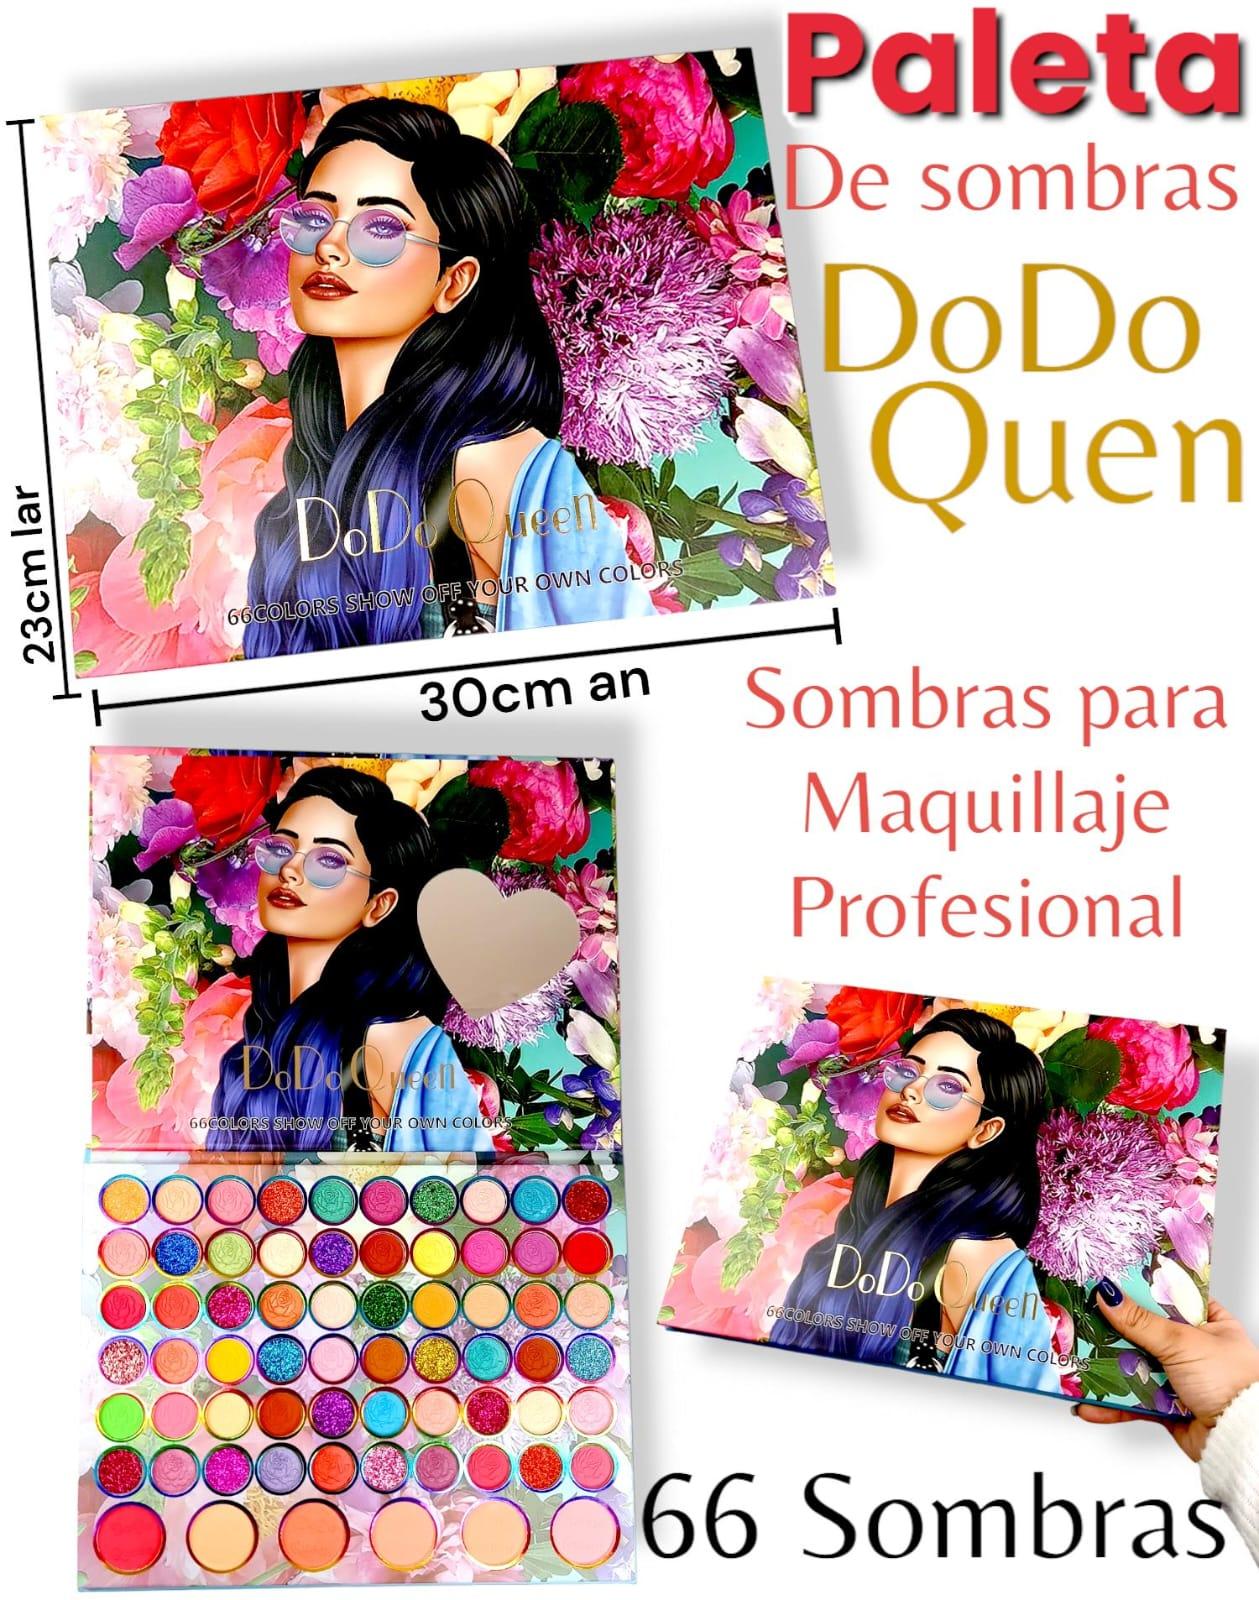 Paleta de Sombras Dodo Queen Show Off Your Own Colors 23cm